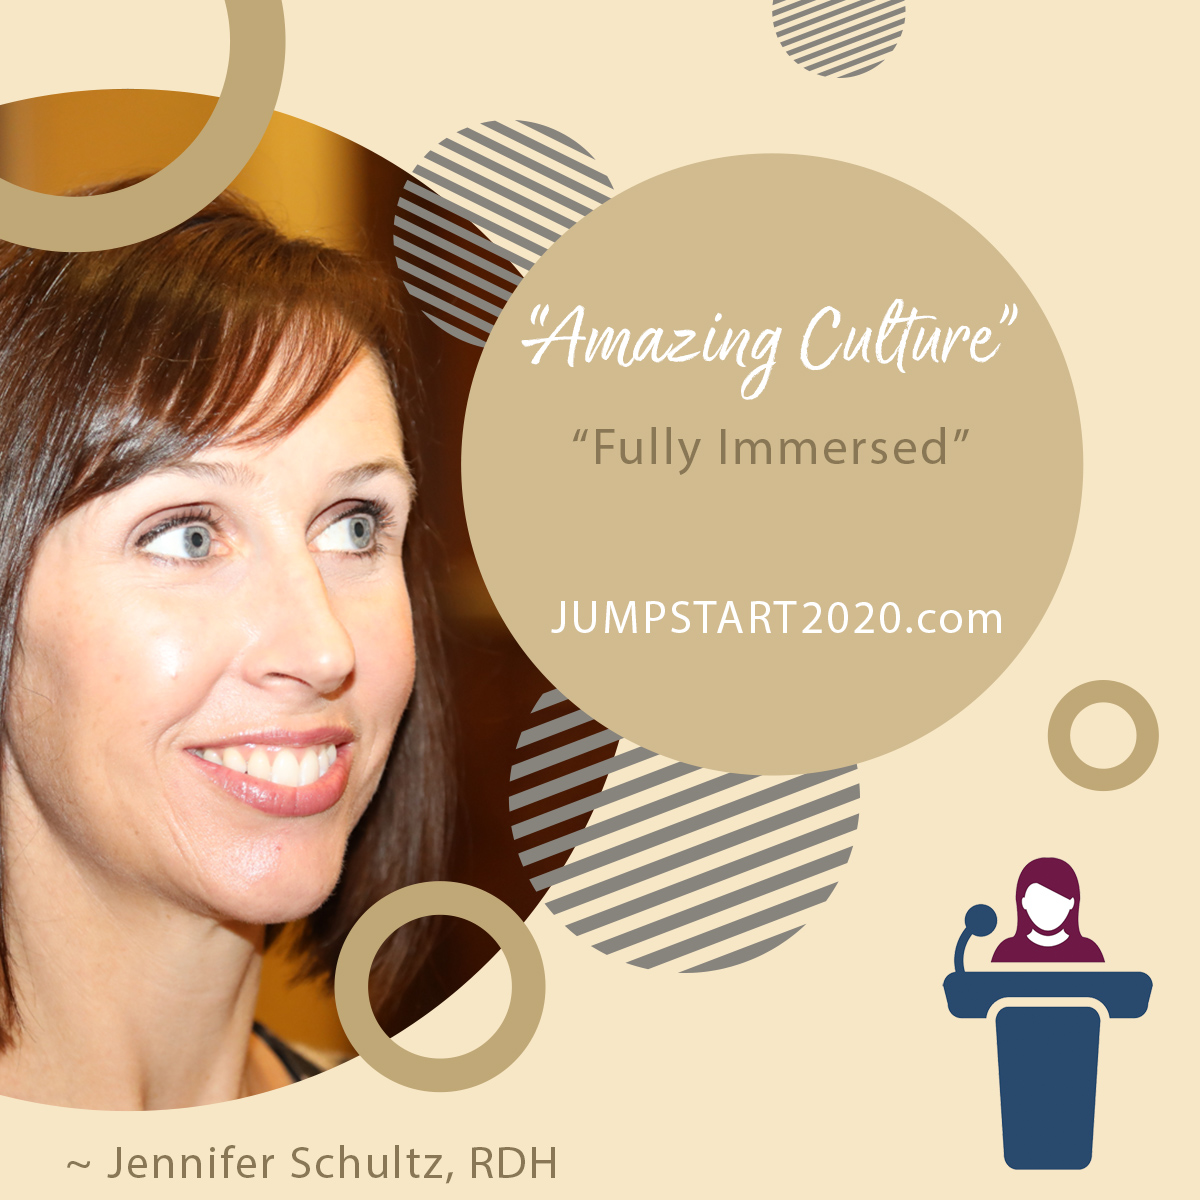 Sandra Berger review on Jumpstart Dental Meeting